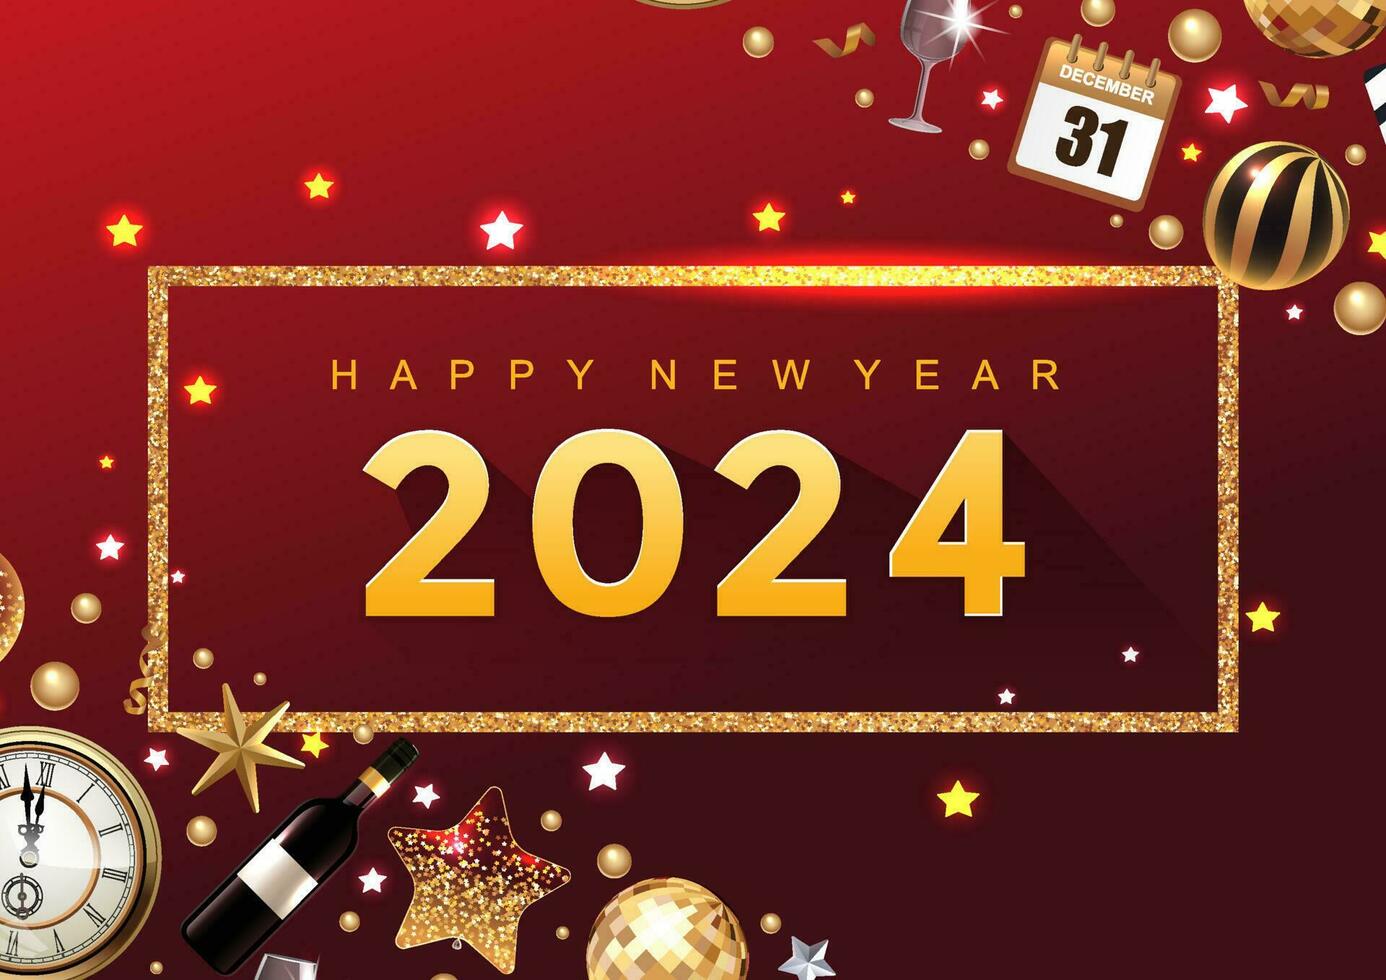 contento nuevo año 2024 elegante lujo saludo tarjeta, bandera, o póster diseño modelo con rojo Navidad ornamento pelota y oro papel picado. vector ilustración